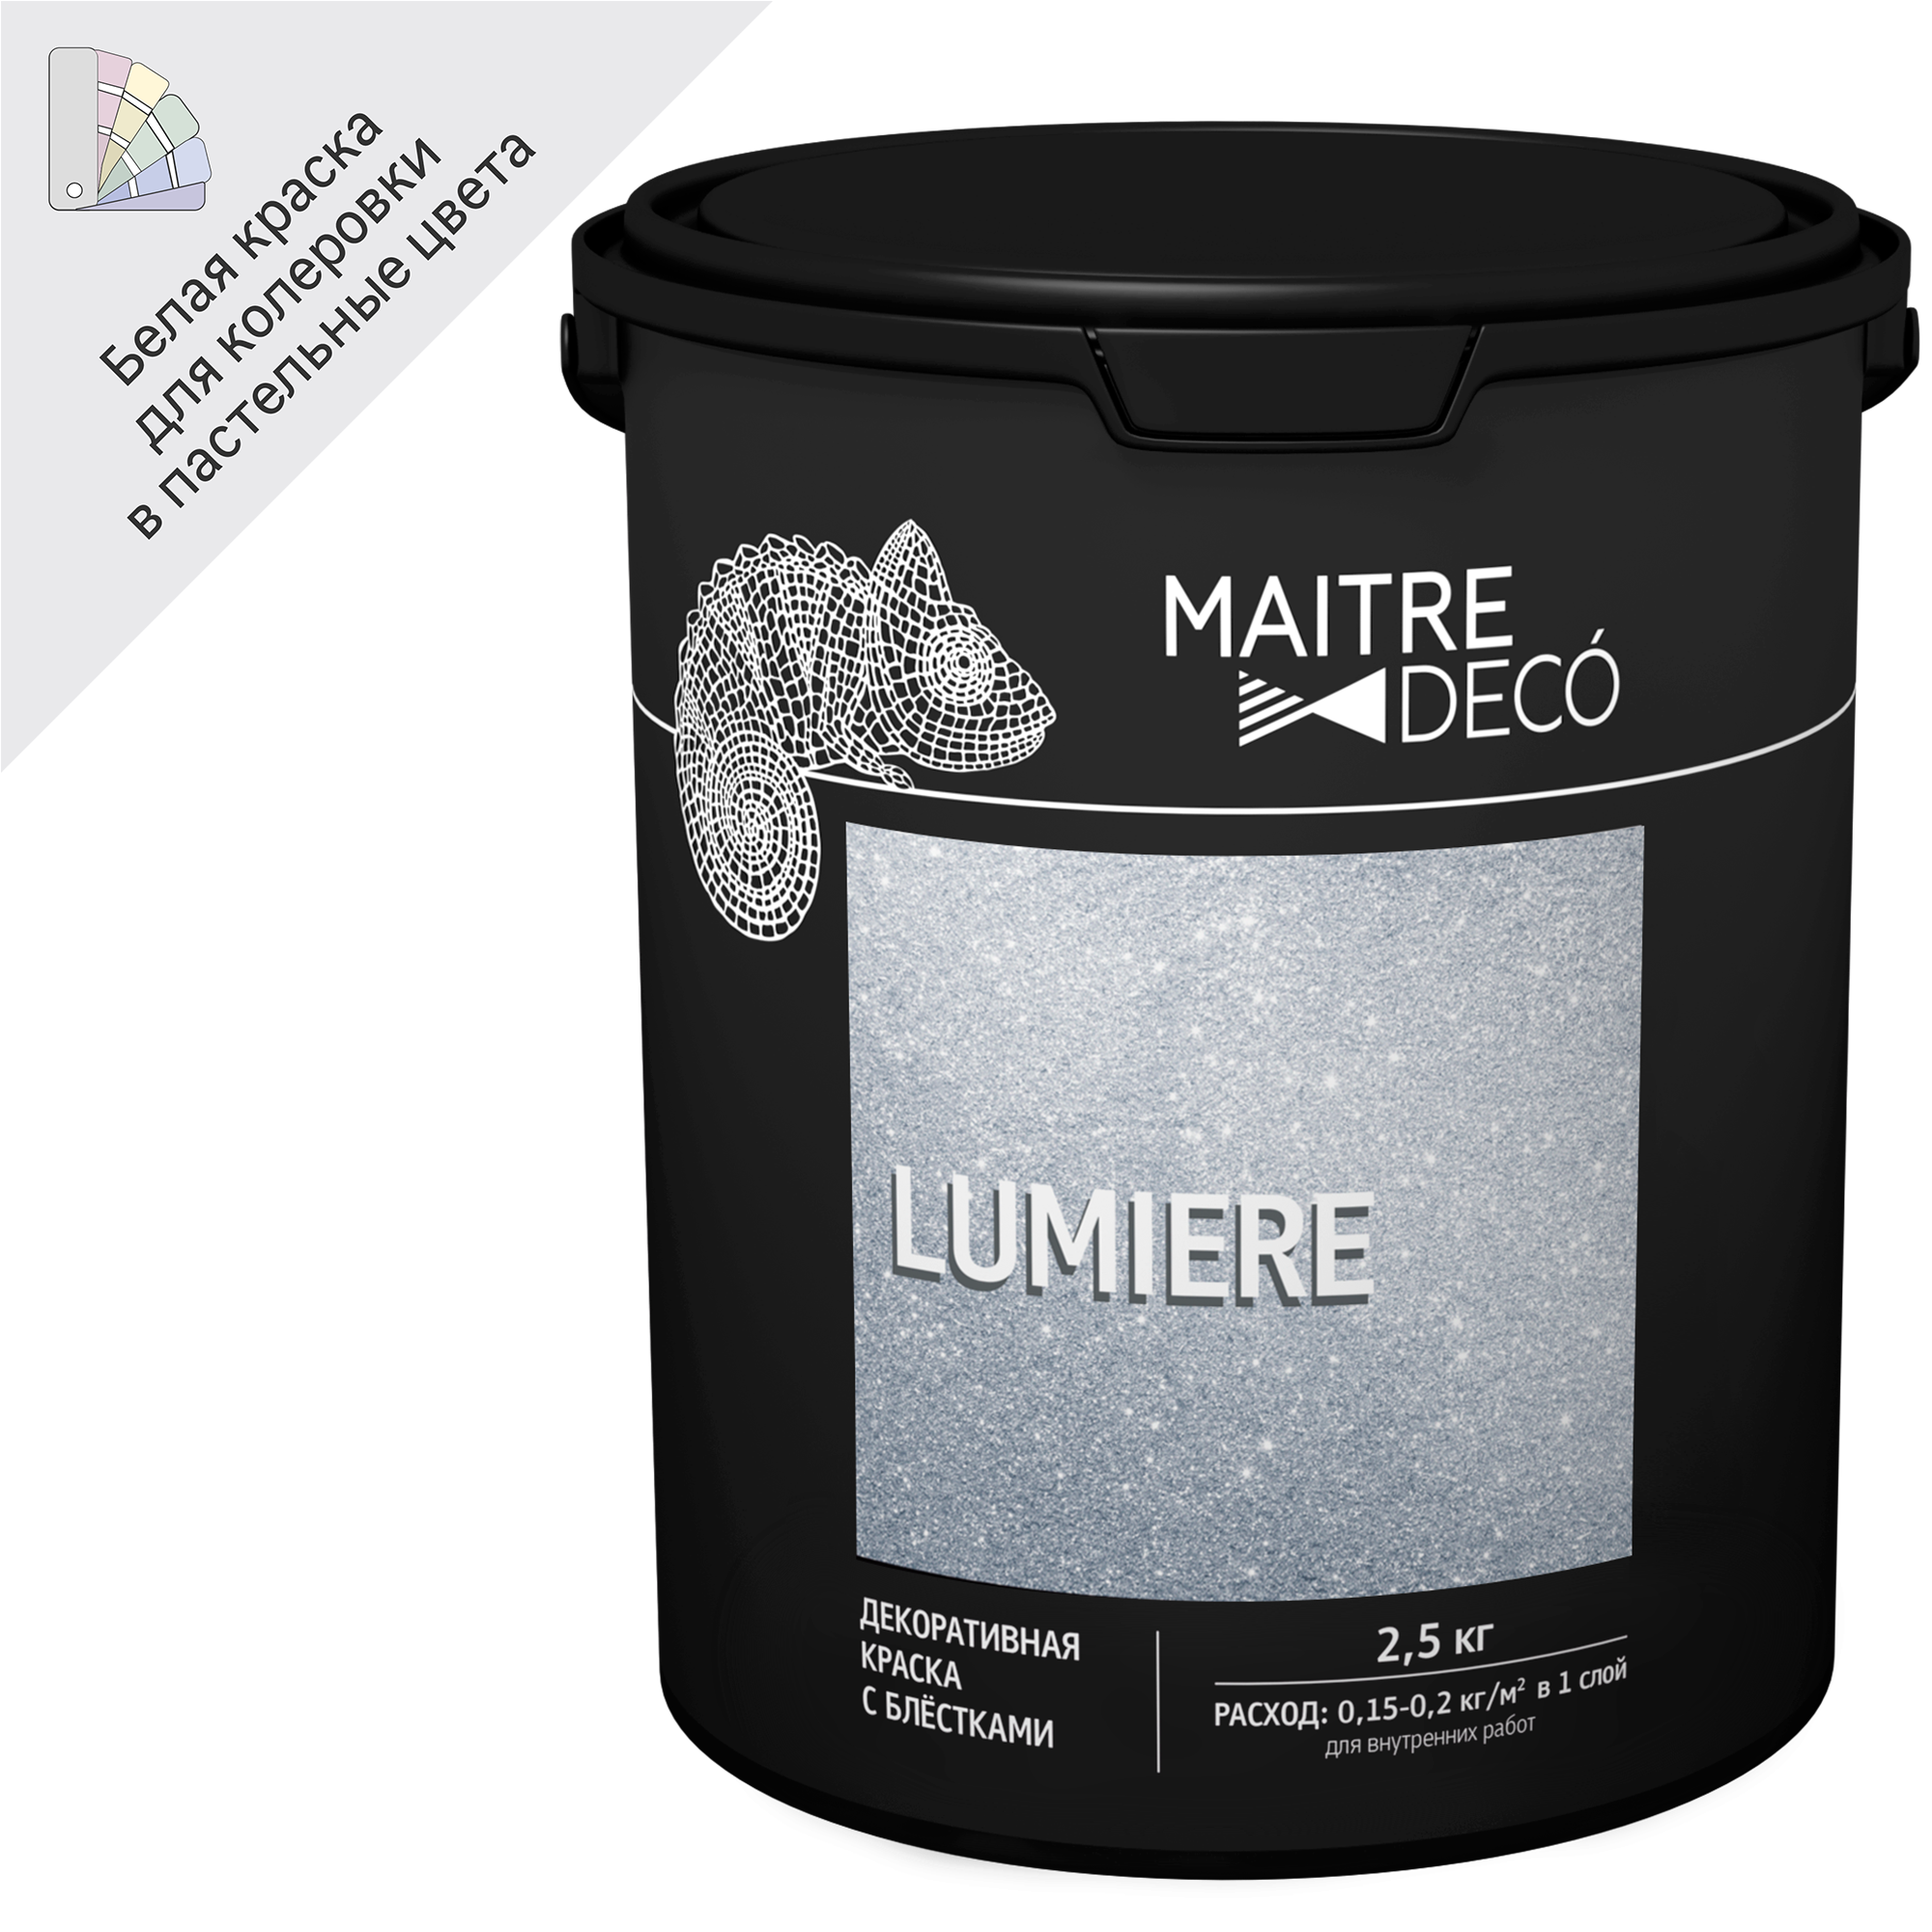 83262256 Декоративная краска Lumiere с блестками 2.5 кг STLM-0040008 MAITRE DECO